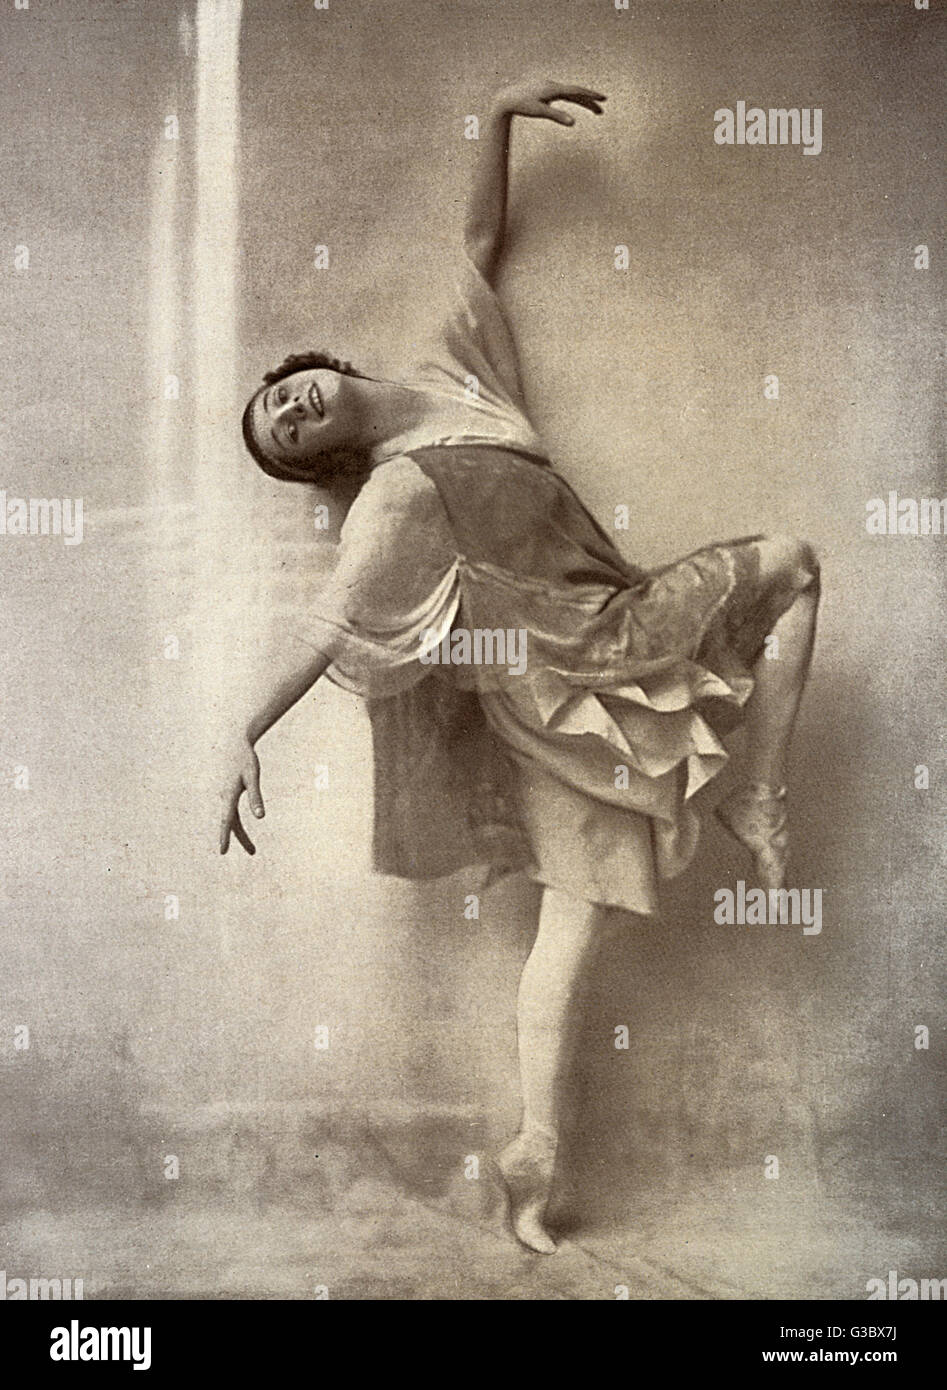 Anna Pavlova (1881-1931), russo ballerina, esibendosi in una danza greca.  Data: agli inizi del XX secolo Foto stock - Alamy